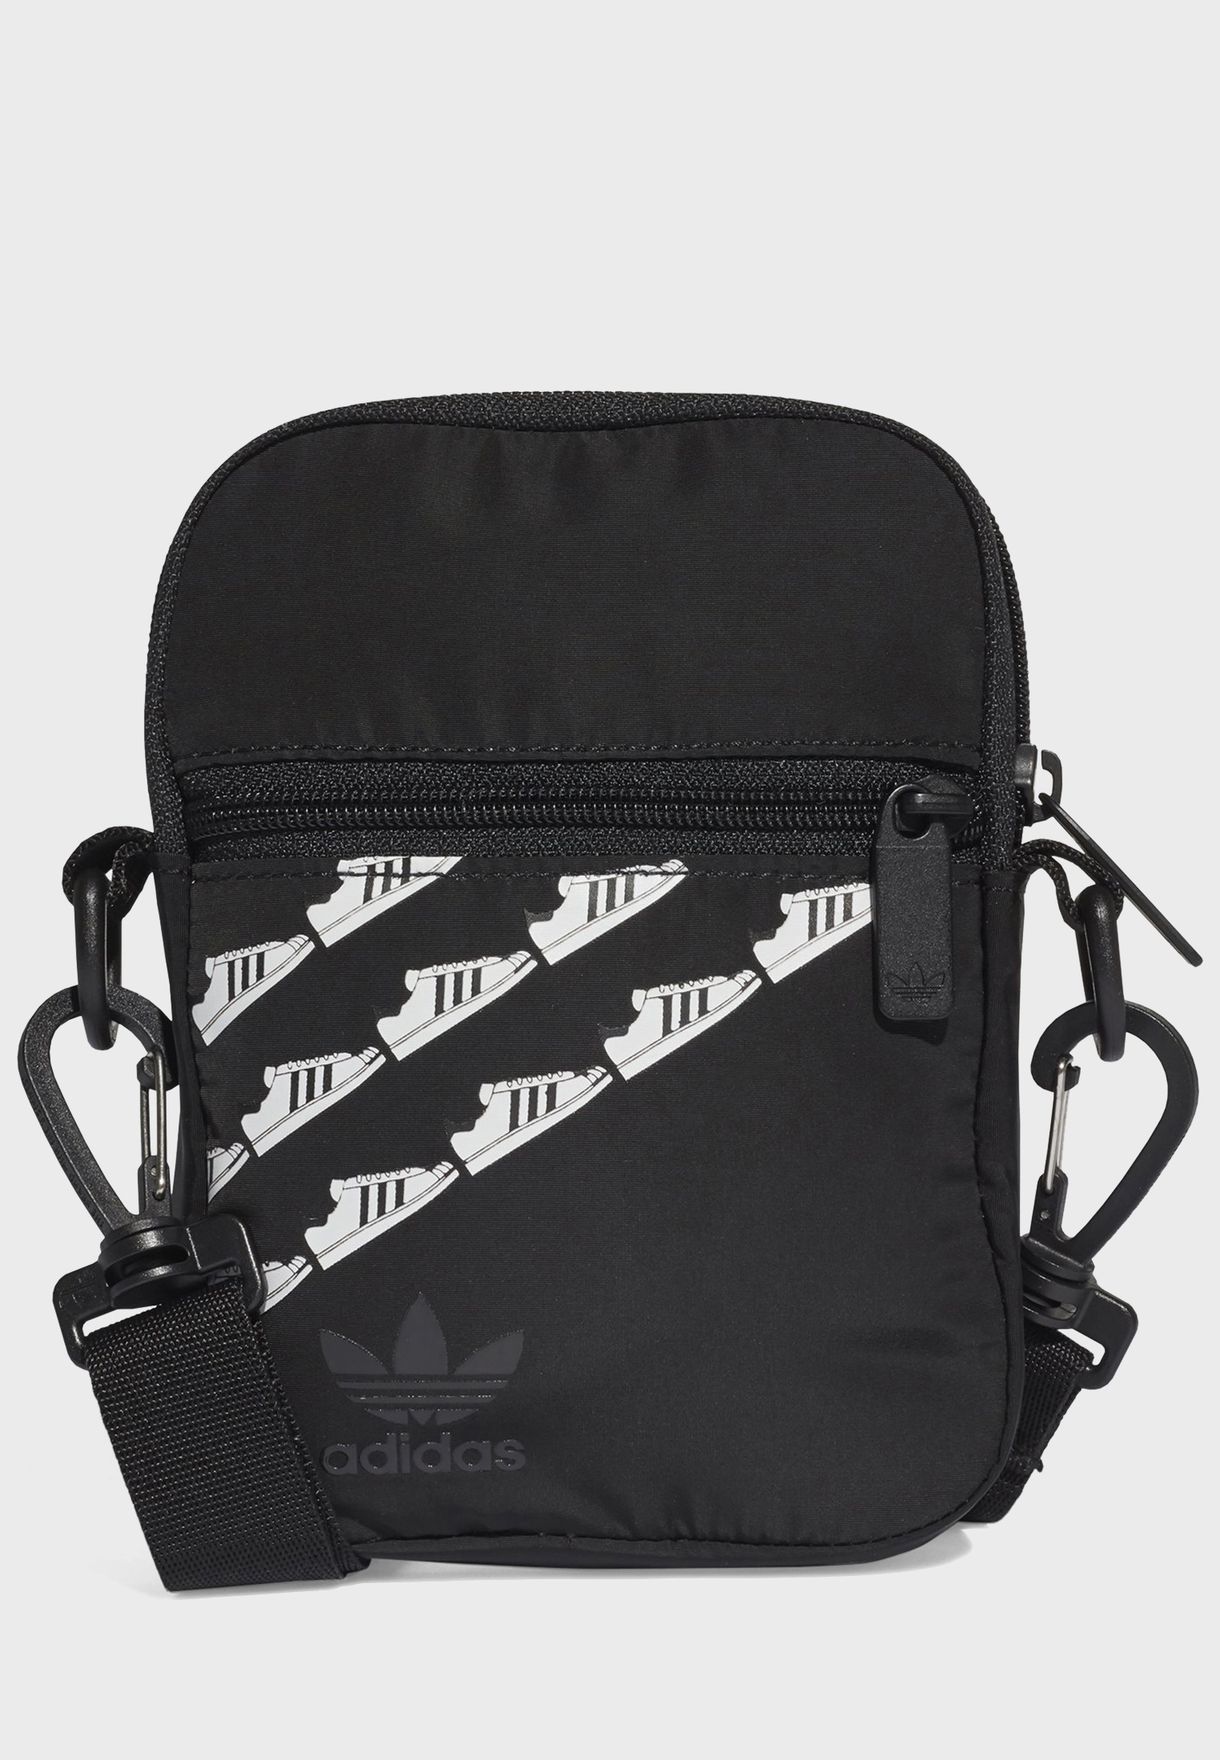 adidas originals black shoulder bag